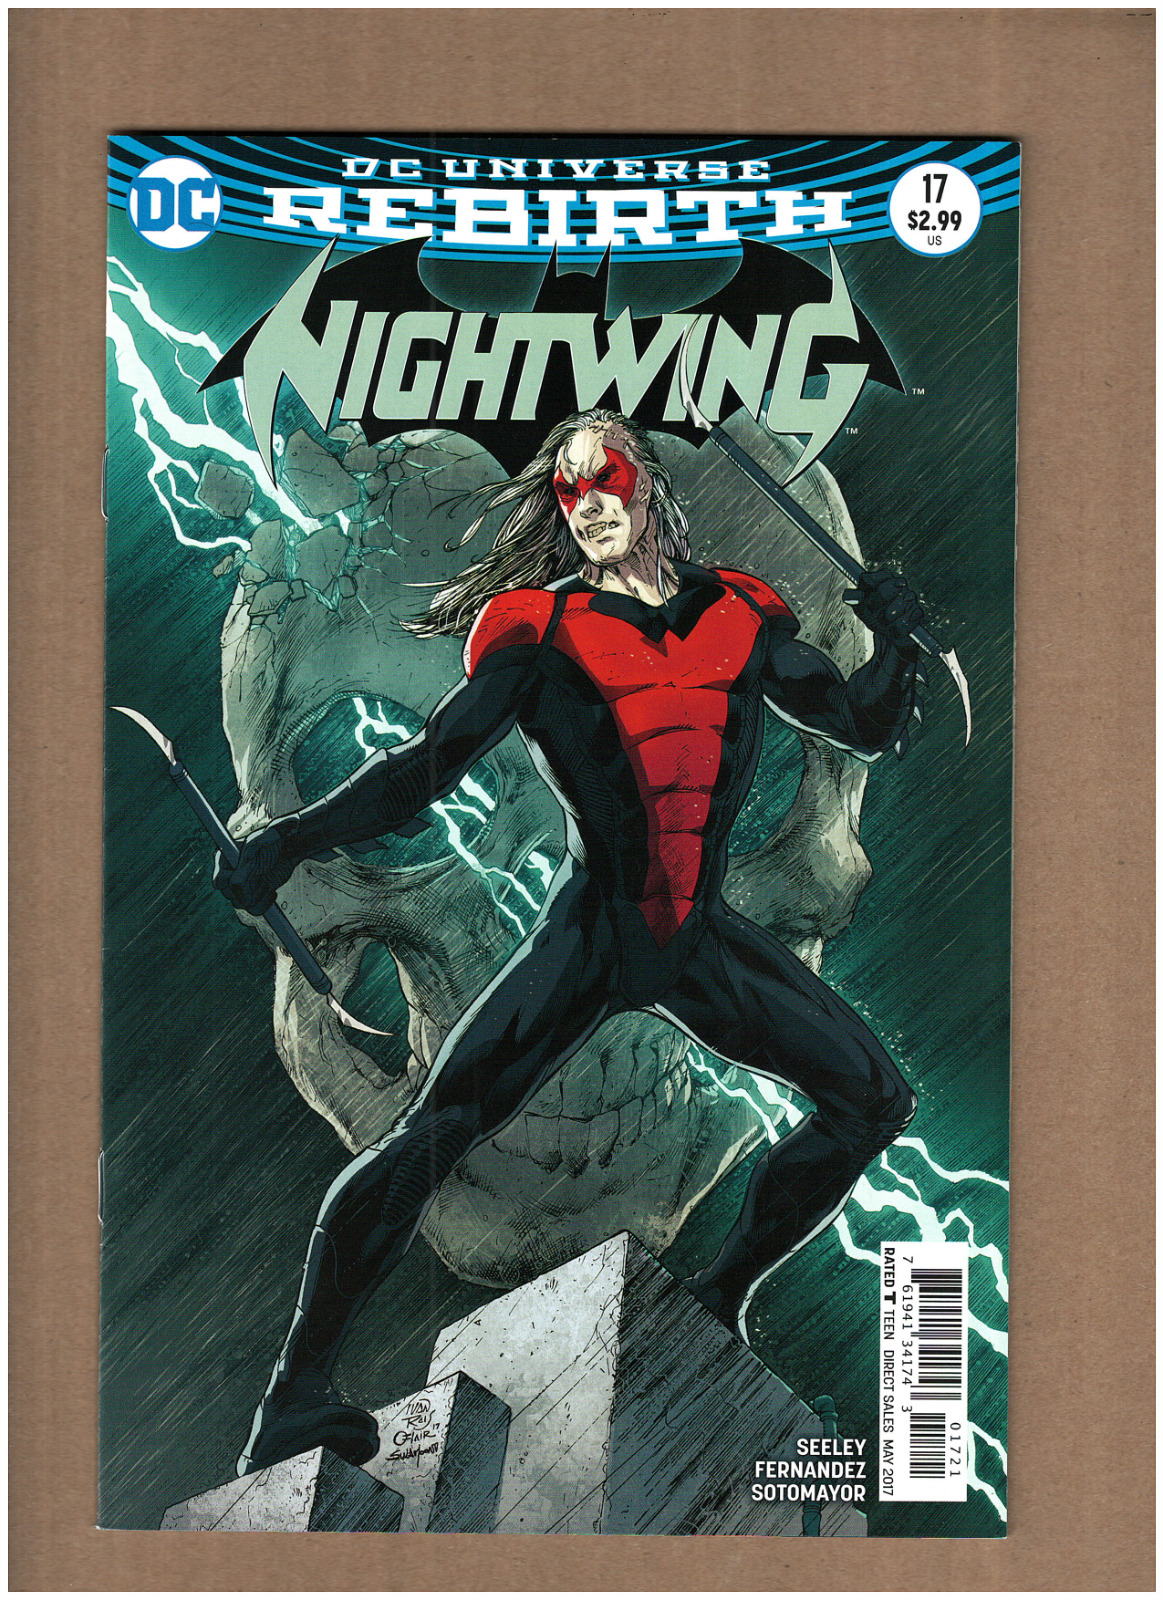 Nightwing #17 DC Rebirth 2017 DAMIAN WAYNE ROBIN Ivan Reis Variant NM- 9.2